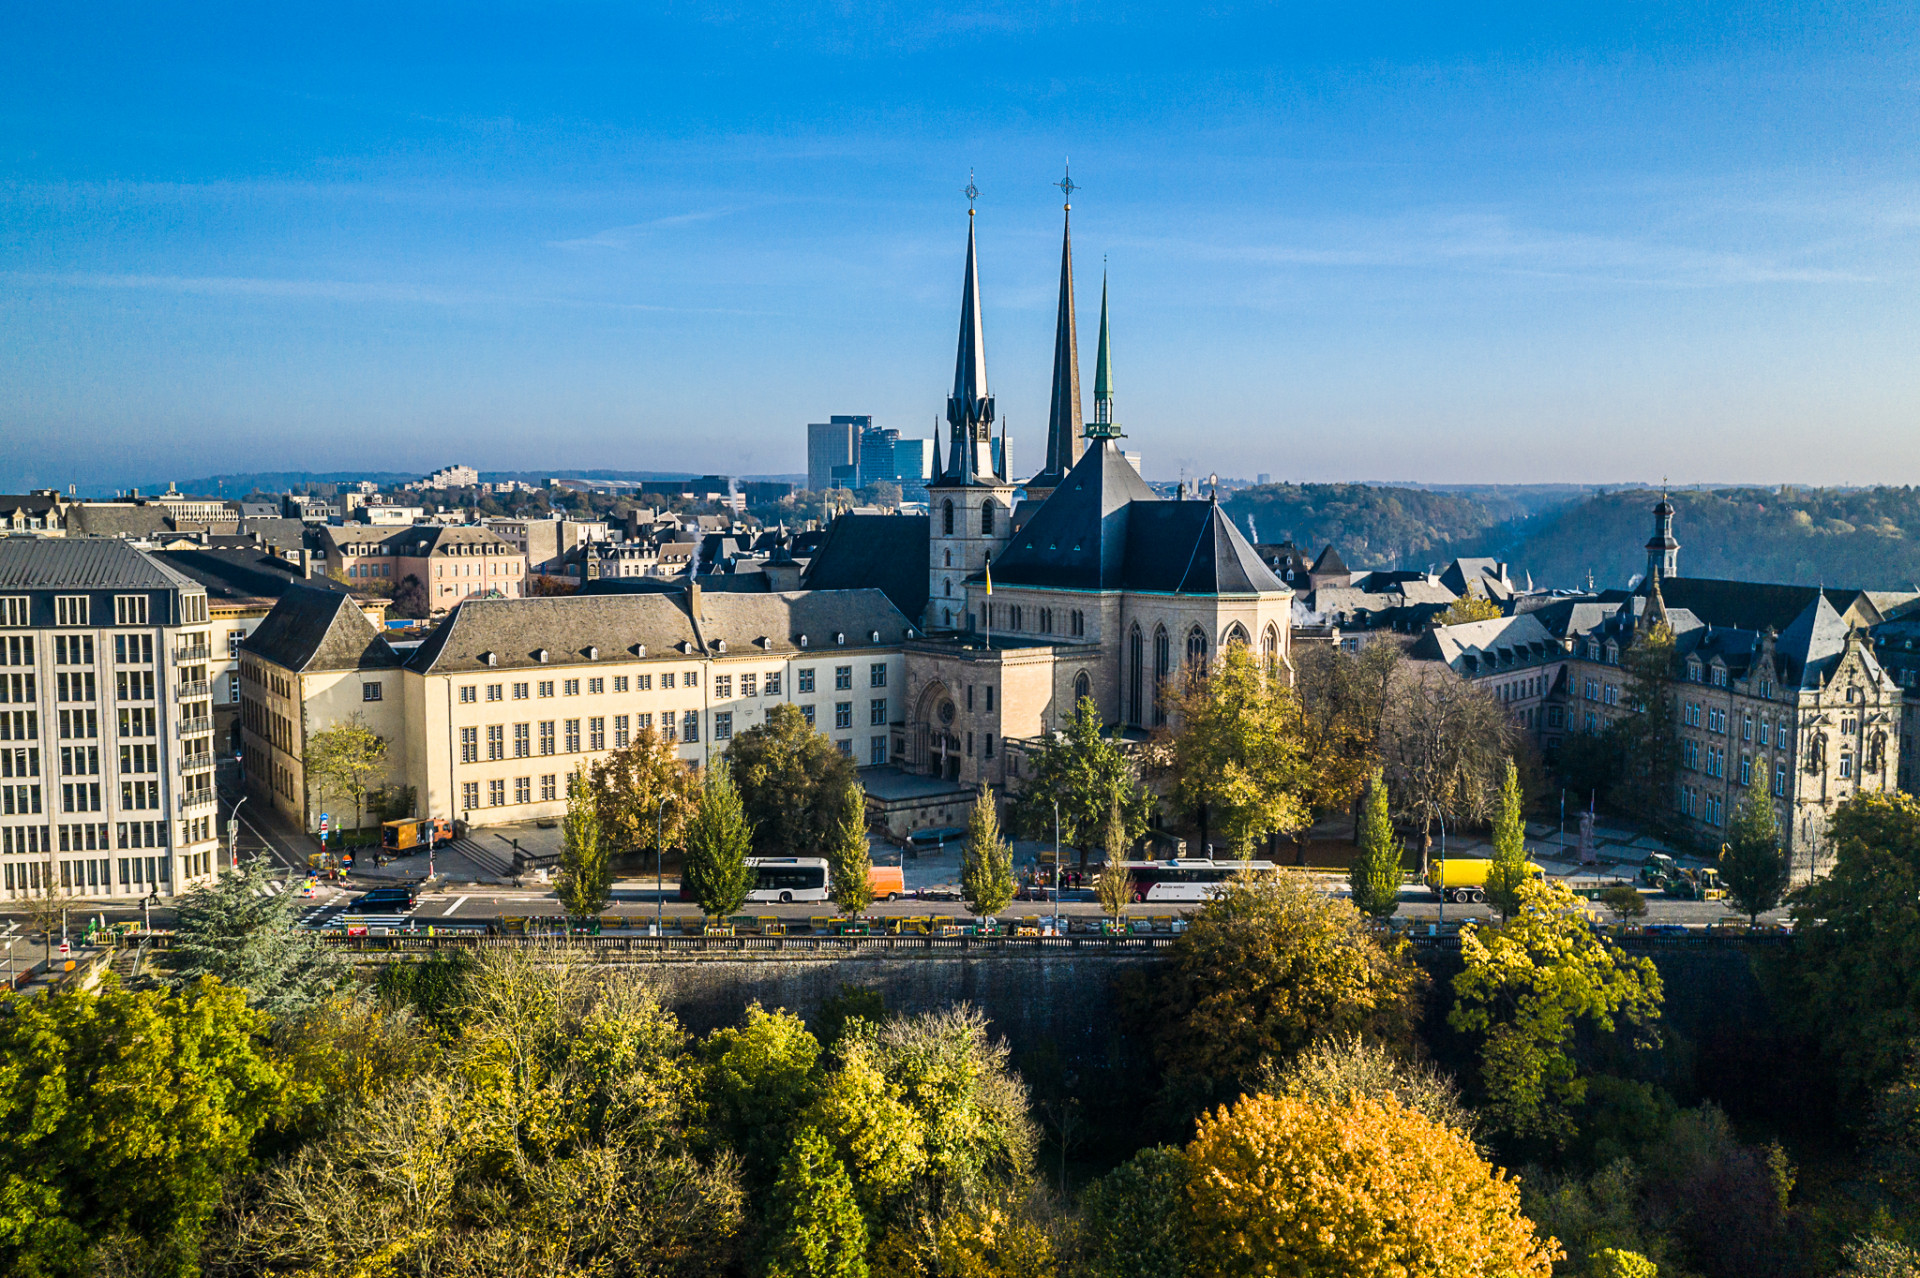 tour du lịch free & easy Luxembourg - Nhà thờ Đức Bà (Notre Dame catheral)